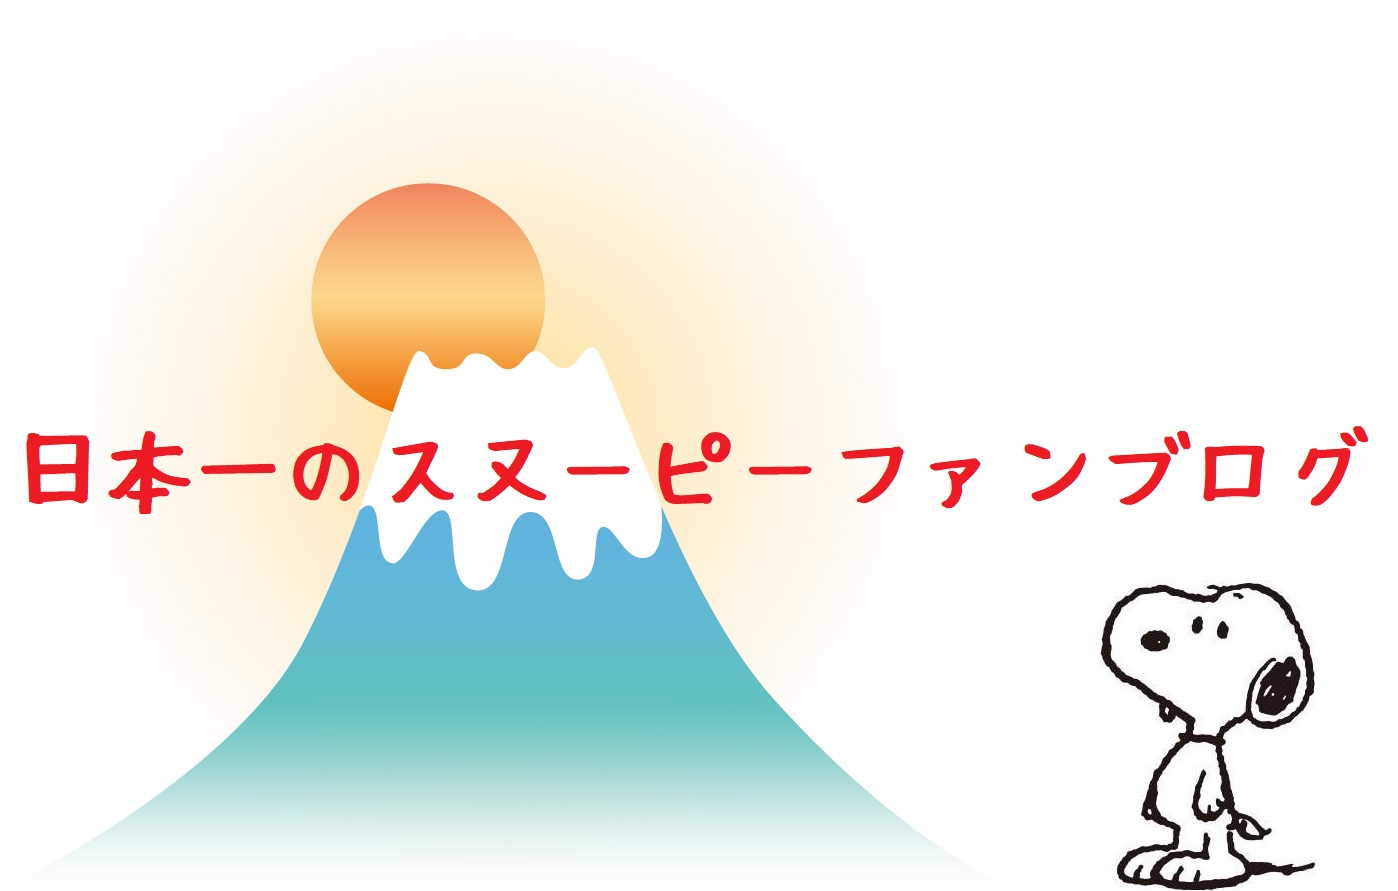 スヌーピーファンブログ日本一富士山世界的大人気キャラクター1